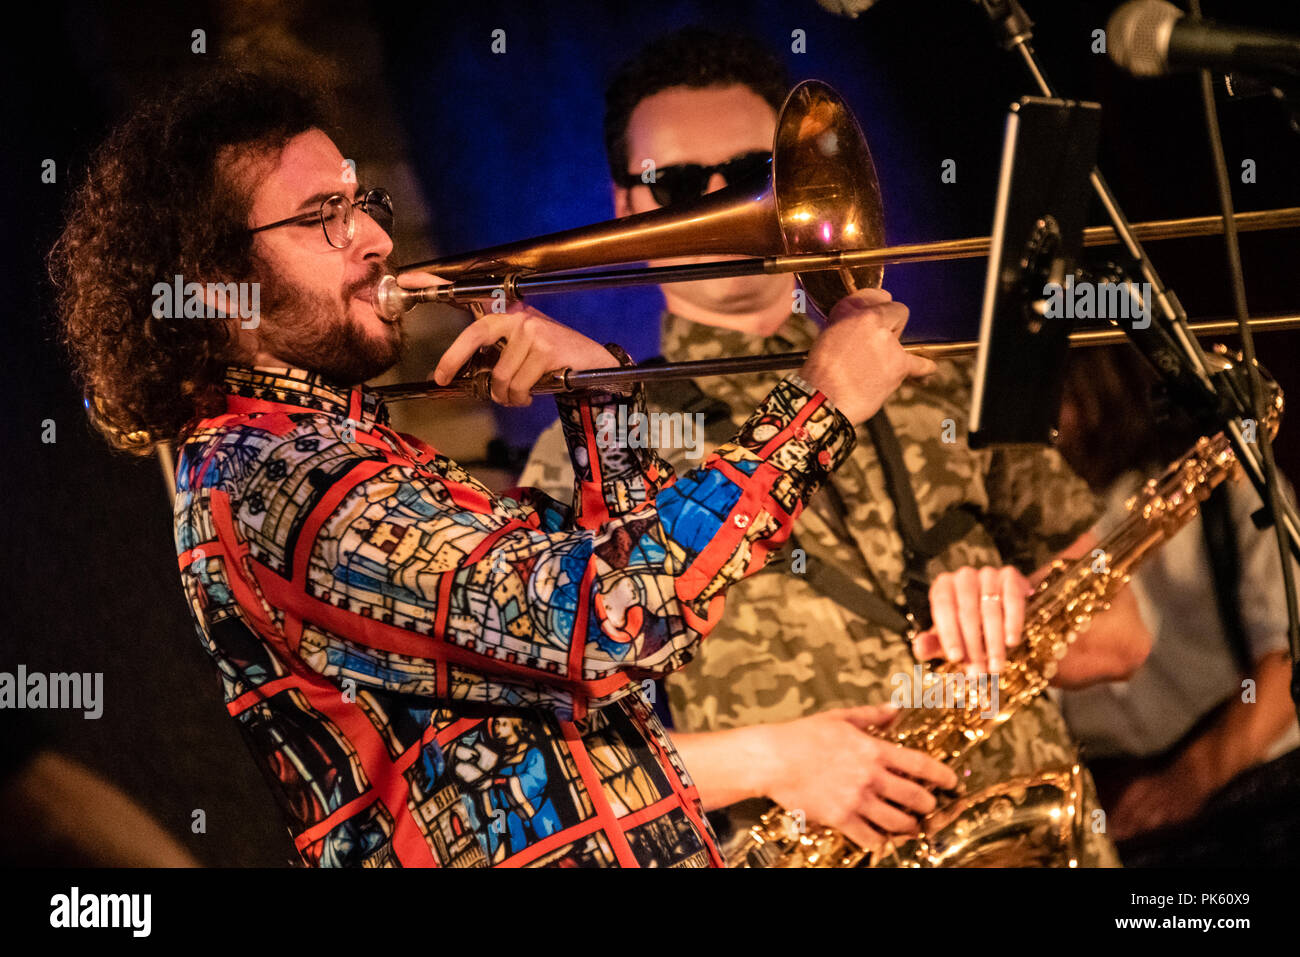 Musicien Memphis Freedman Steorts intervient pour rejoindre Claude Barzotti avec sa maîtrise des compétences trombone pendant un concert live au City Winery Atlanta. Banque D'Images